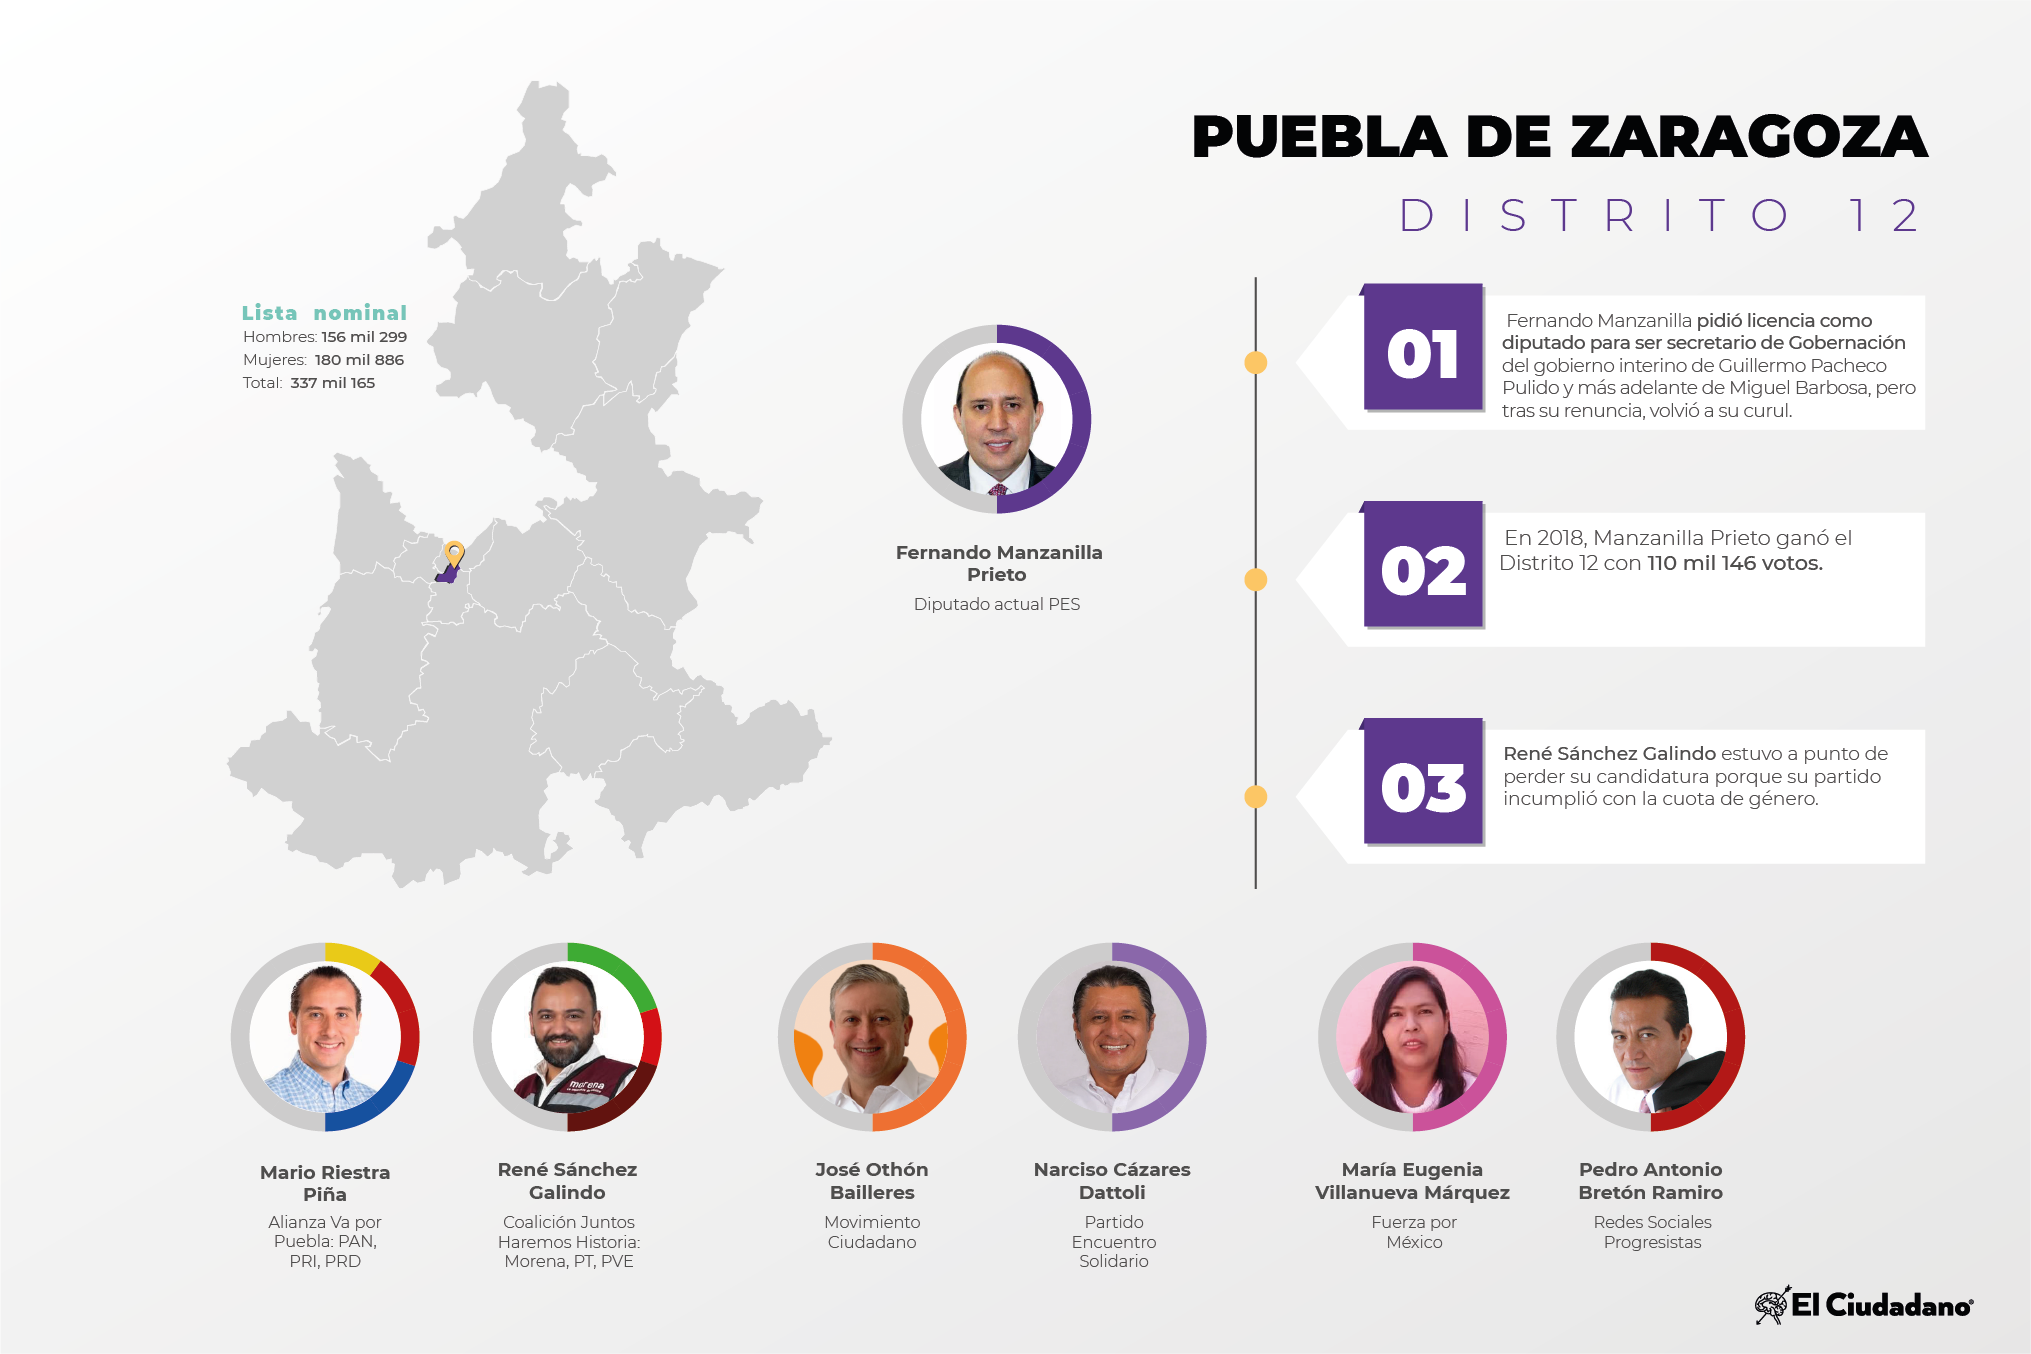 Radiografía de distritos electorales federales: Distrito 12, Puebla